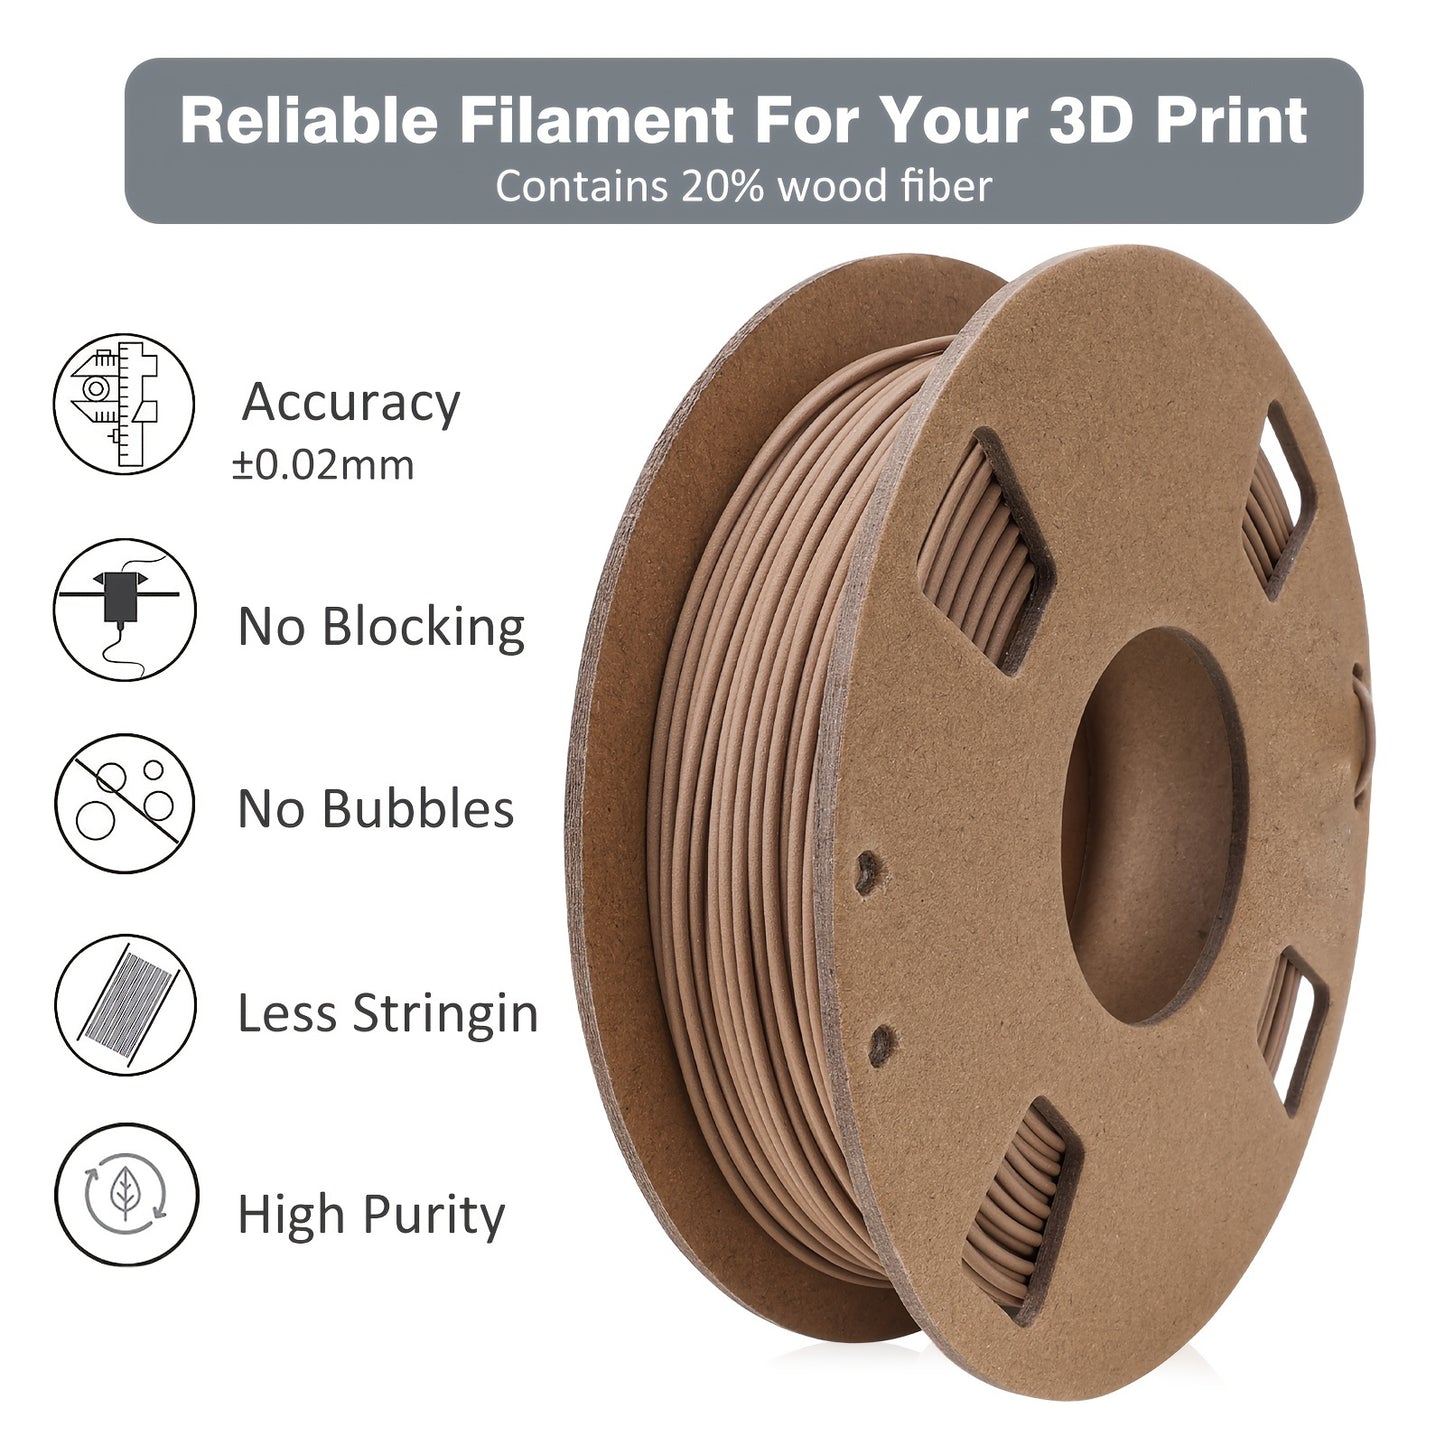 IWECOLOR Wood Filament 1.75mm, PLA+ Wood Filament 1.75mm, 3D Printer Filament Contains 20% Real Wood Fiber Fit Most FDM 3D Printers